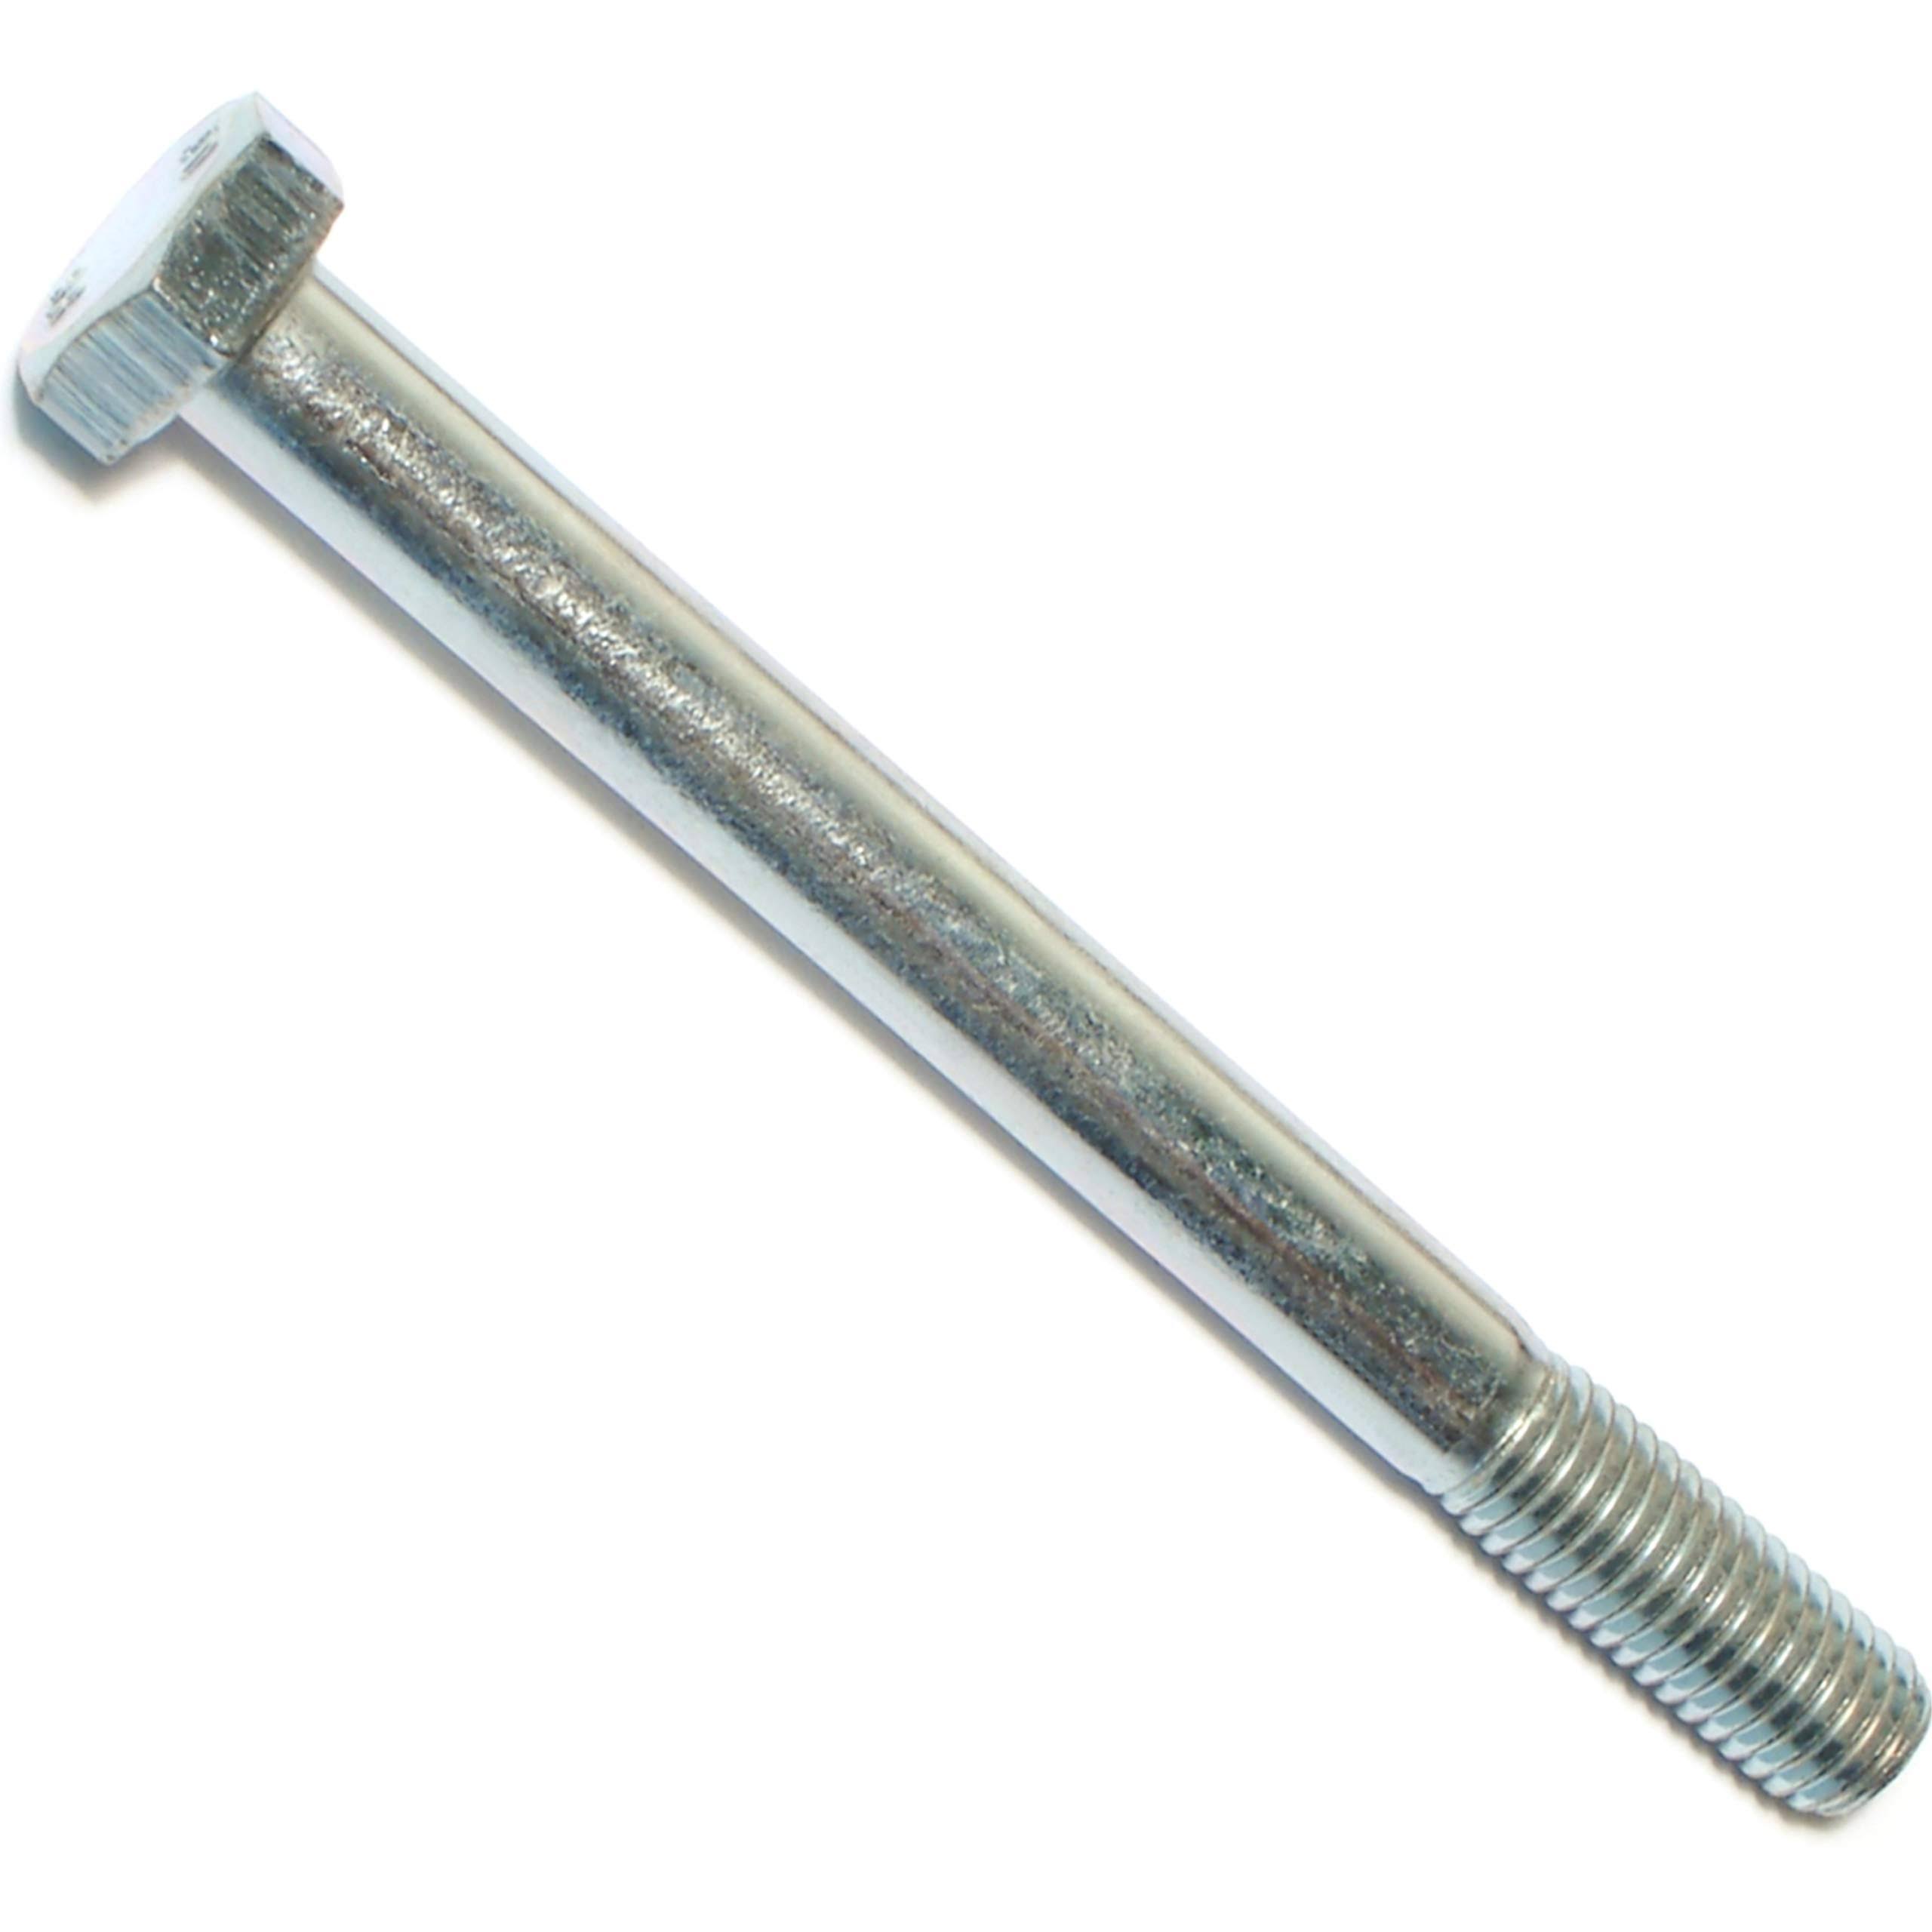 6-Piece 12mm x 45mm Hard-to-Find Fastener 014973275242 Class 8.8 Hex Cap Screws 